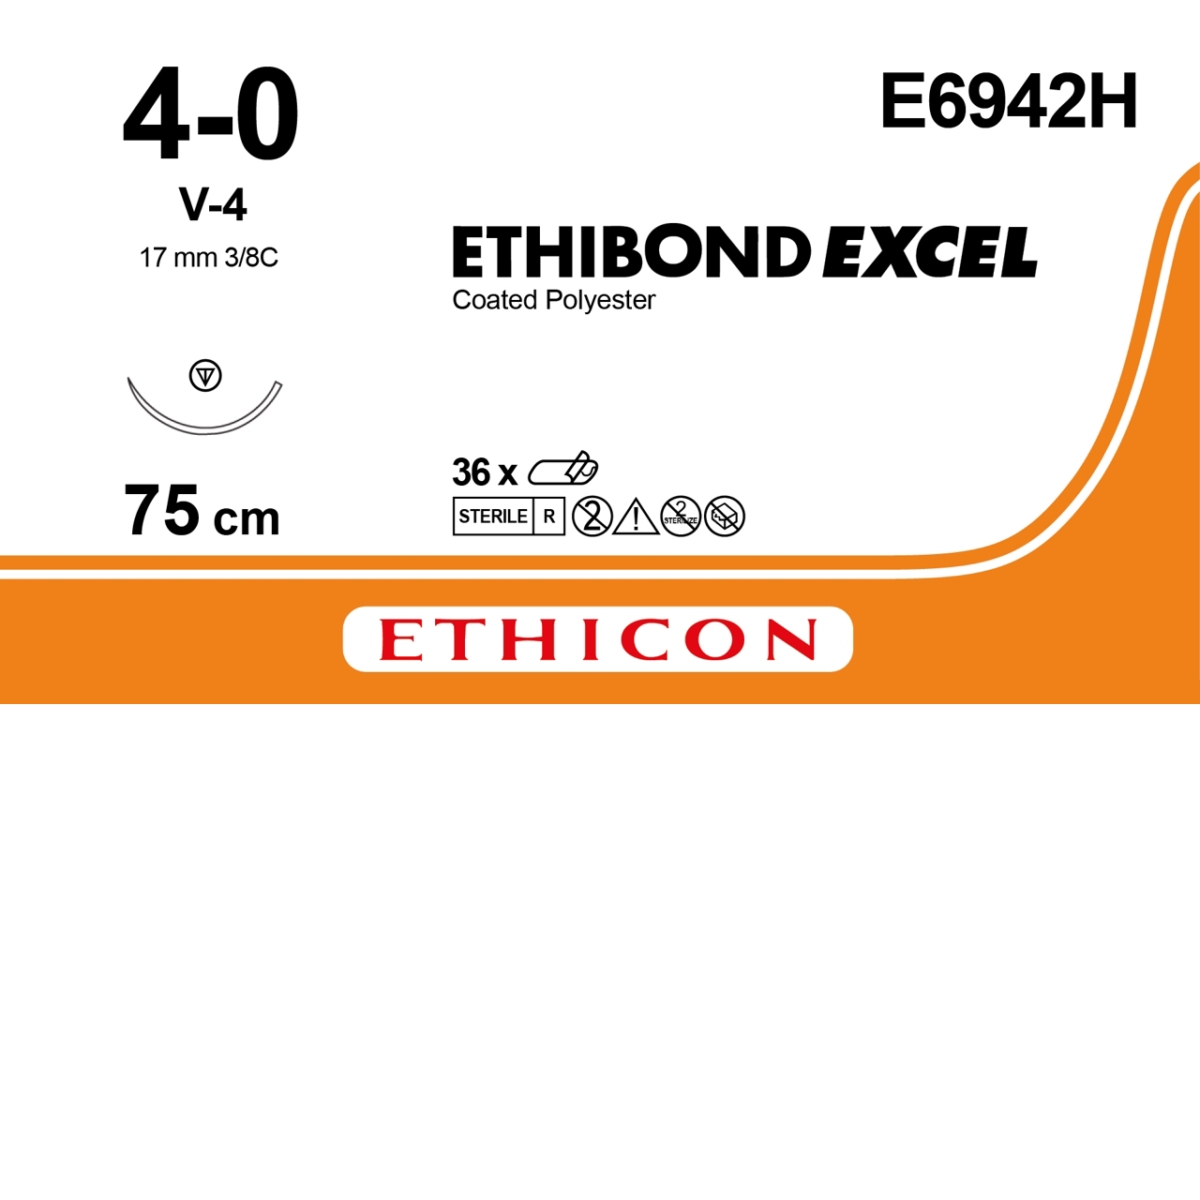 SUTURES ETHIBOND EXCEL E6942H V-4 36pc